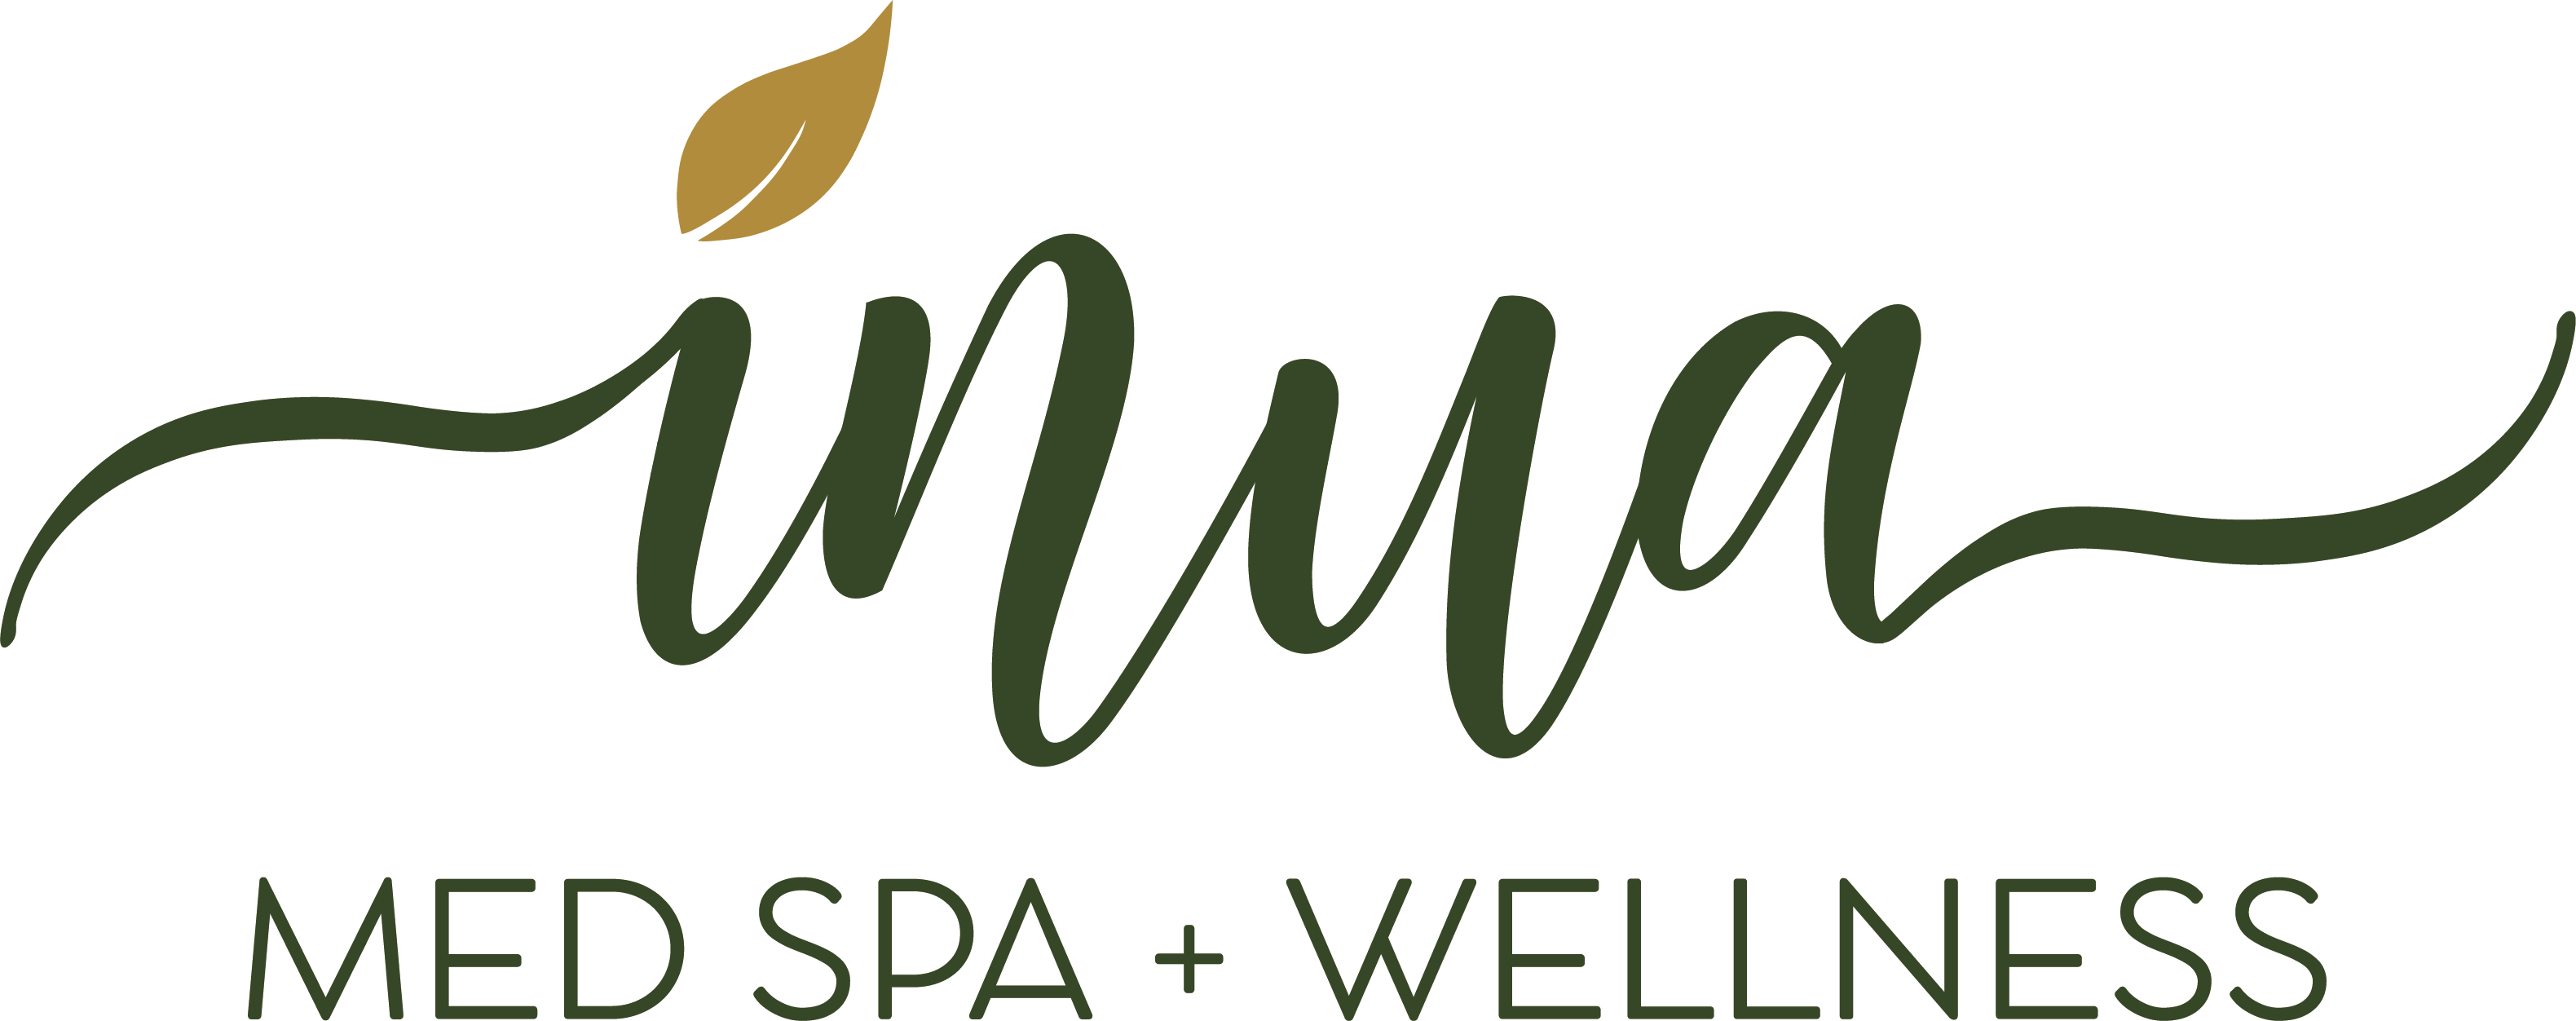 Inua Medspa+Wellness Logo